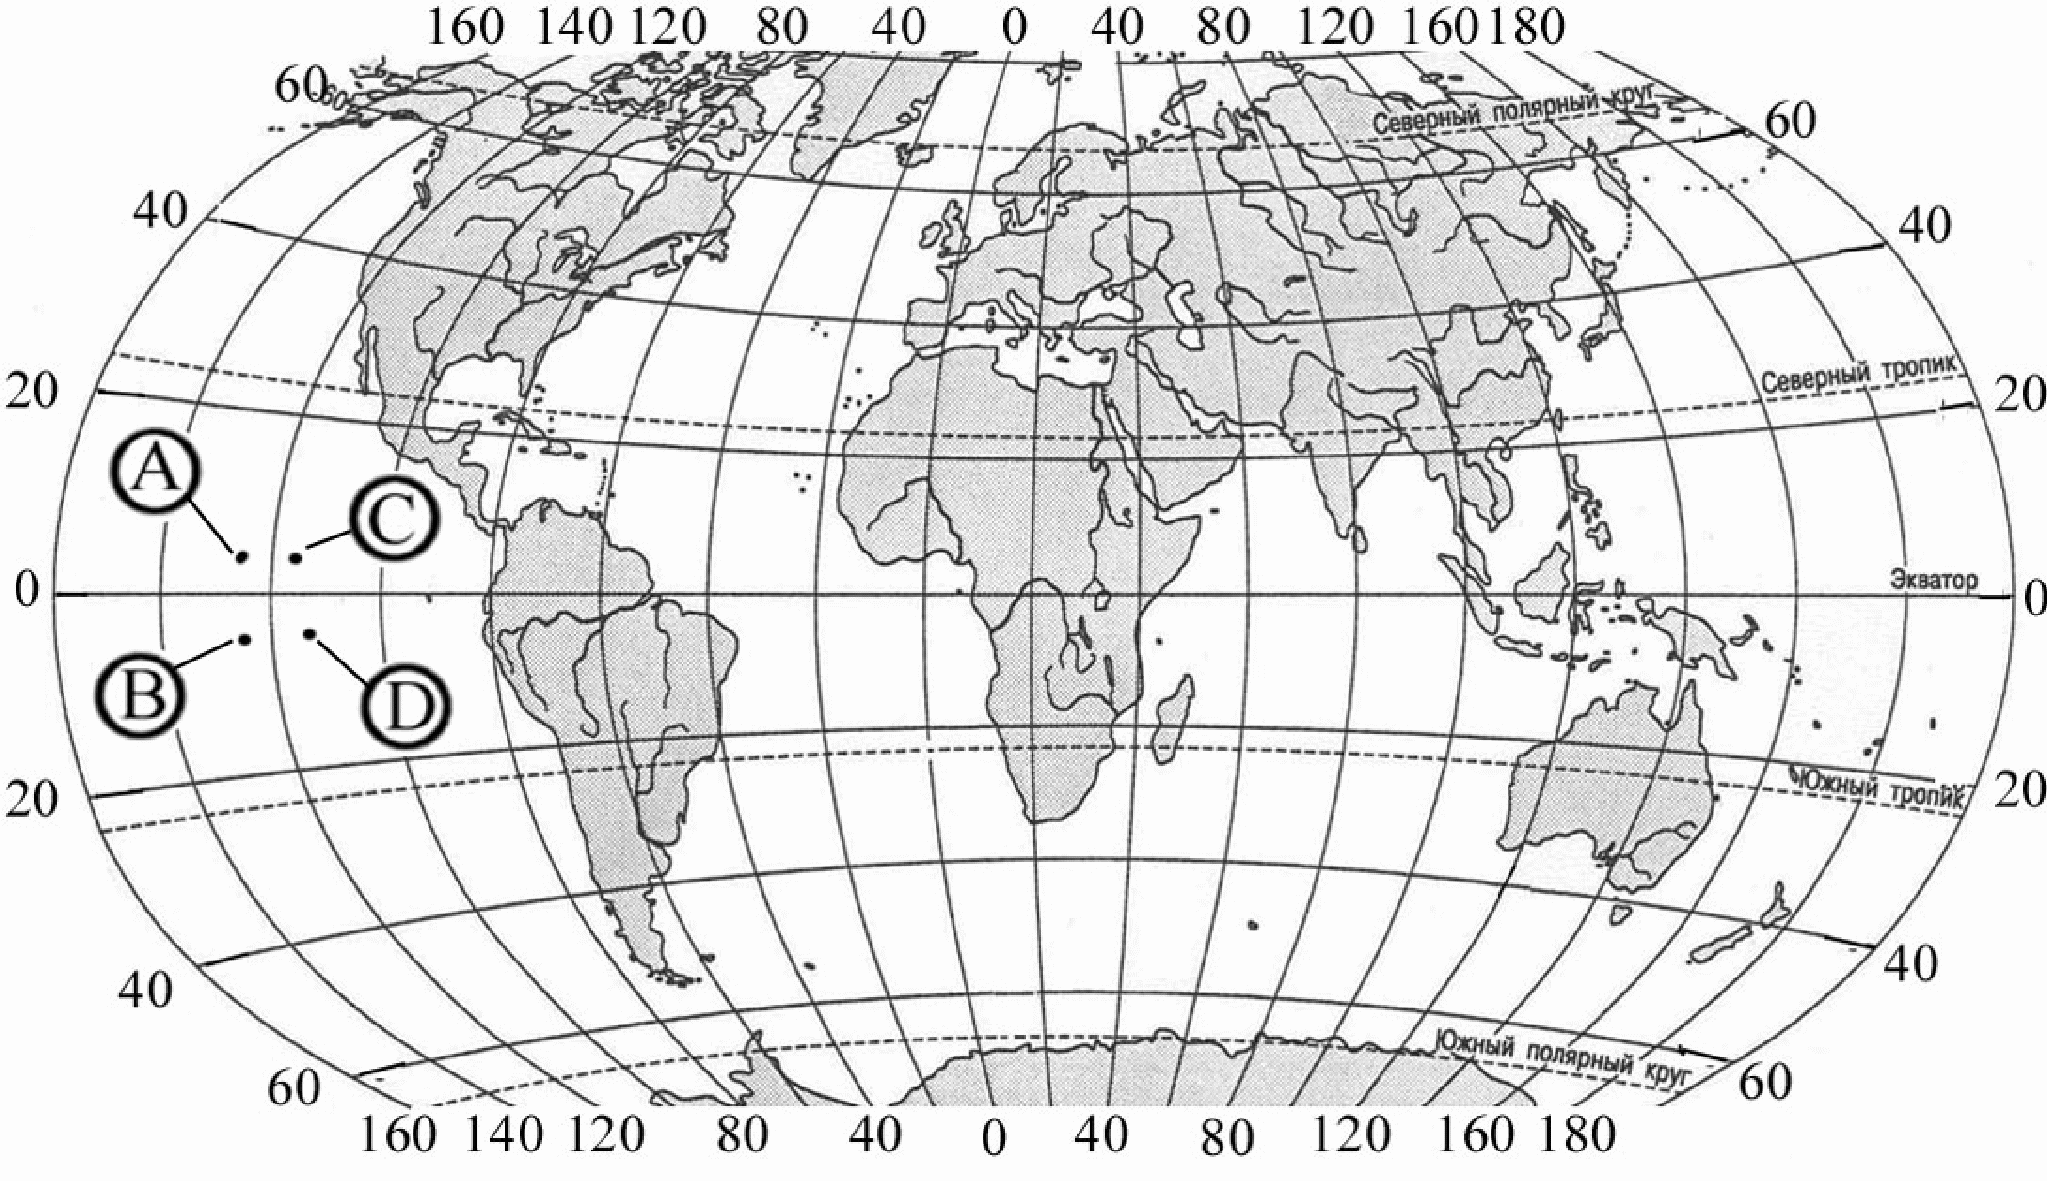 40 с ш 50 в д. Карта с географическими координатами. Карта для определения географических координат.